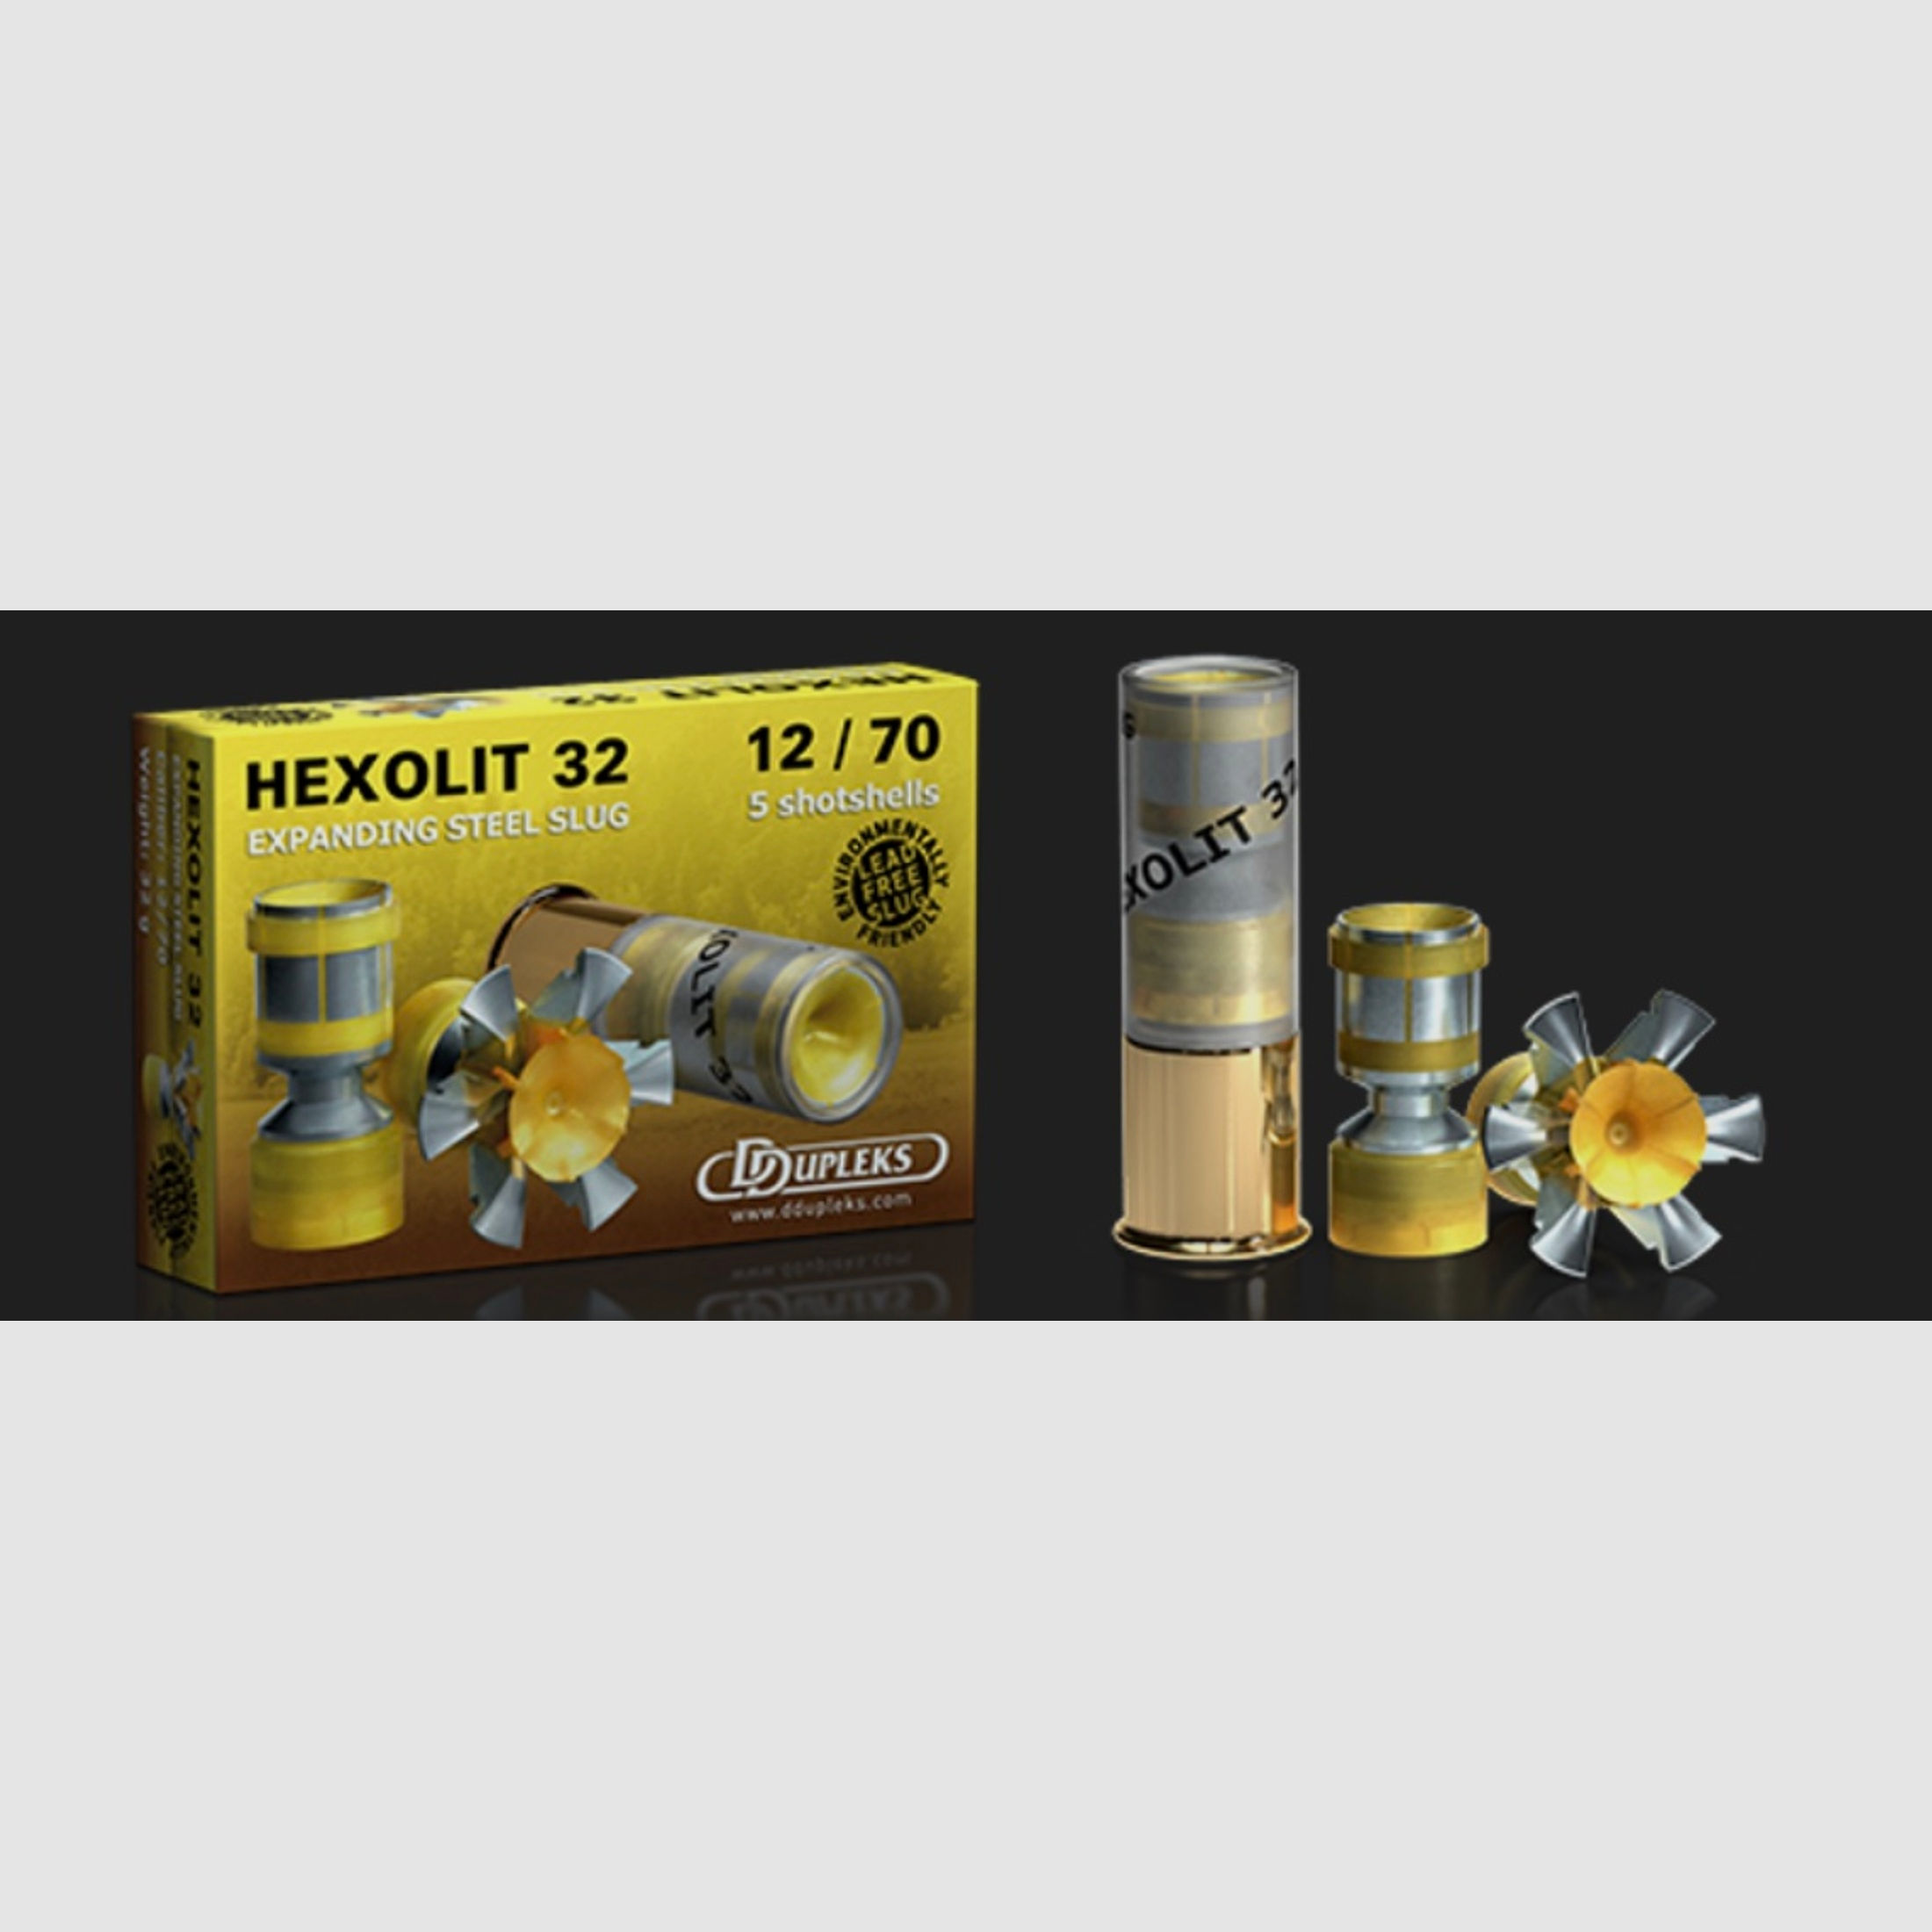 DDupleks Hexolit 32 01-01260 12/70 32g Expanding Steel Slug Flintenlaufgeschoss Bleifrei 5 Stk.